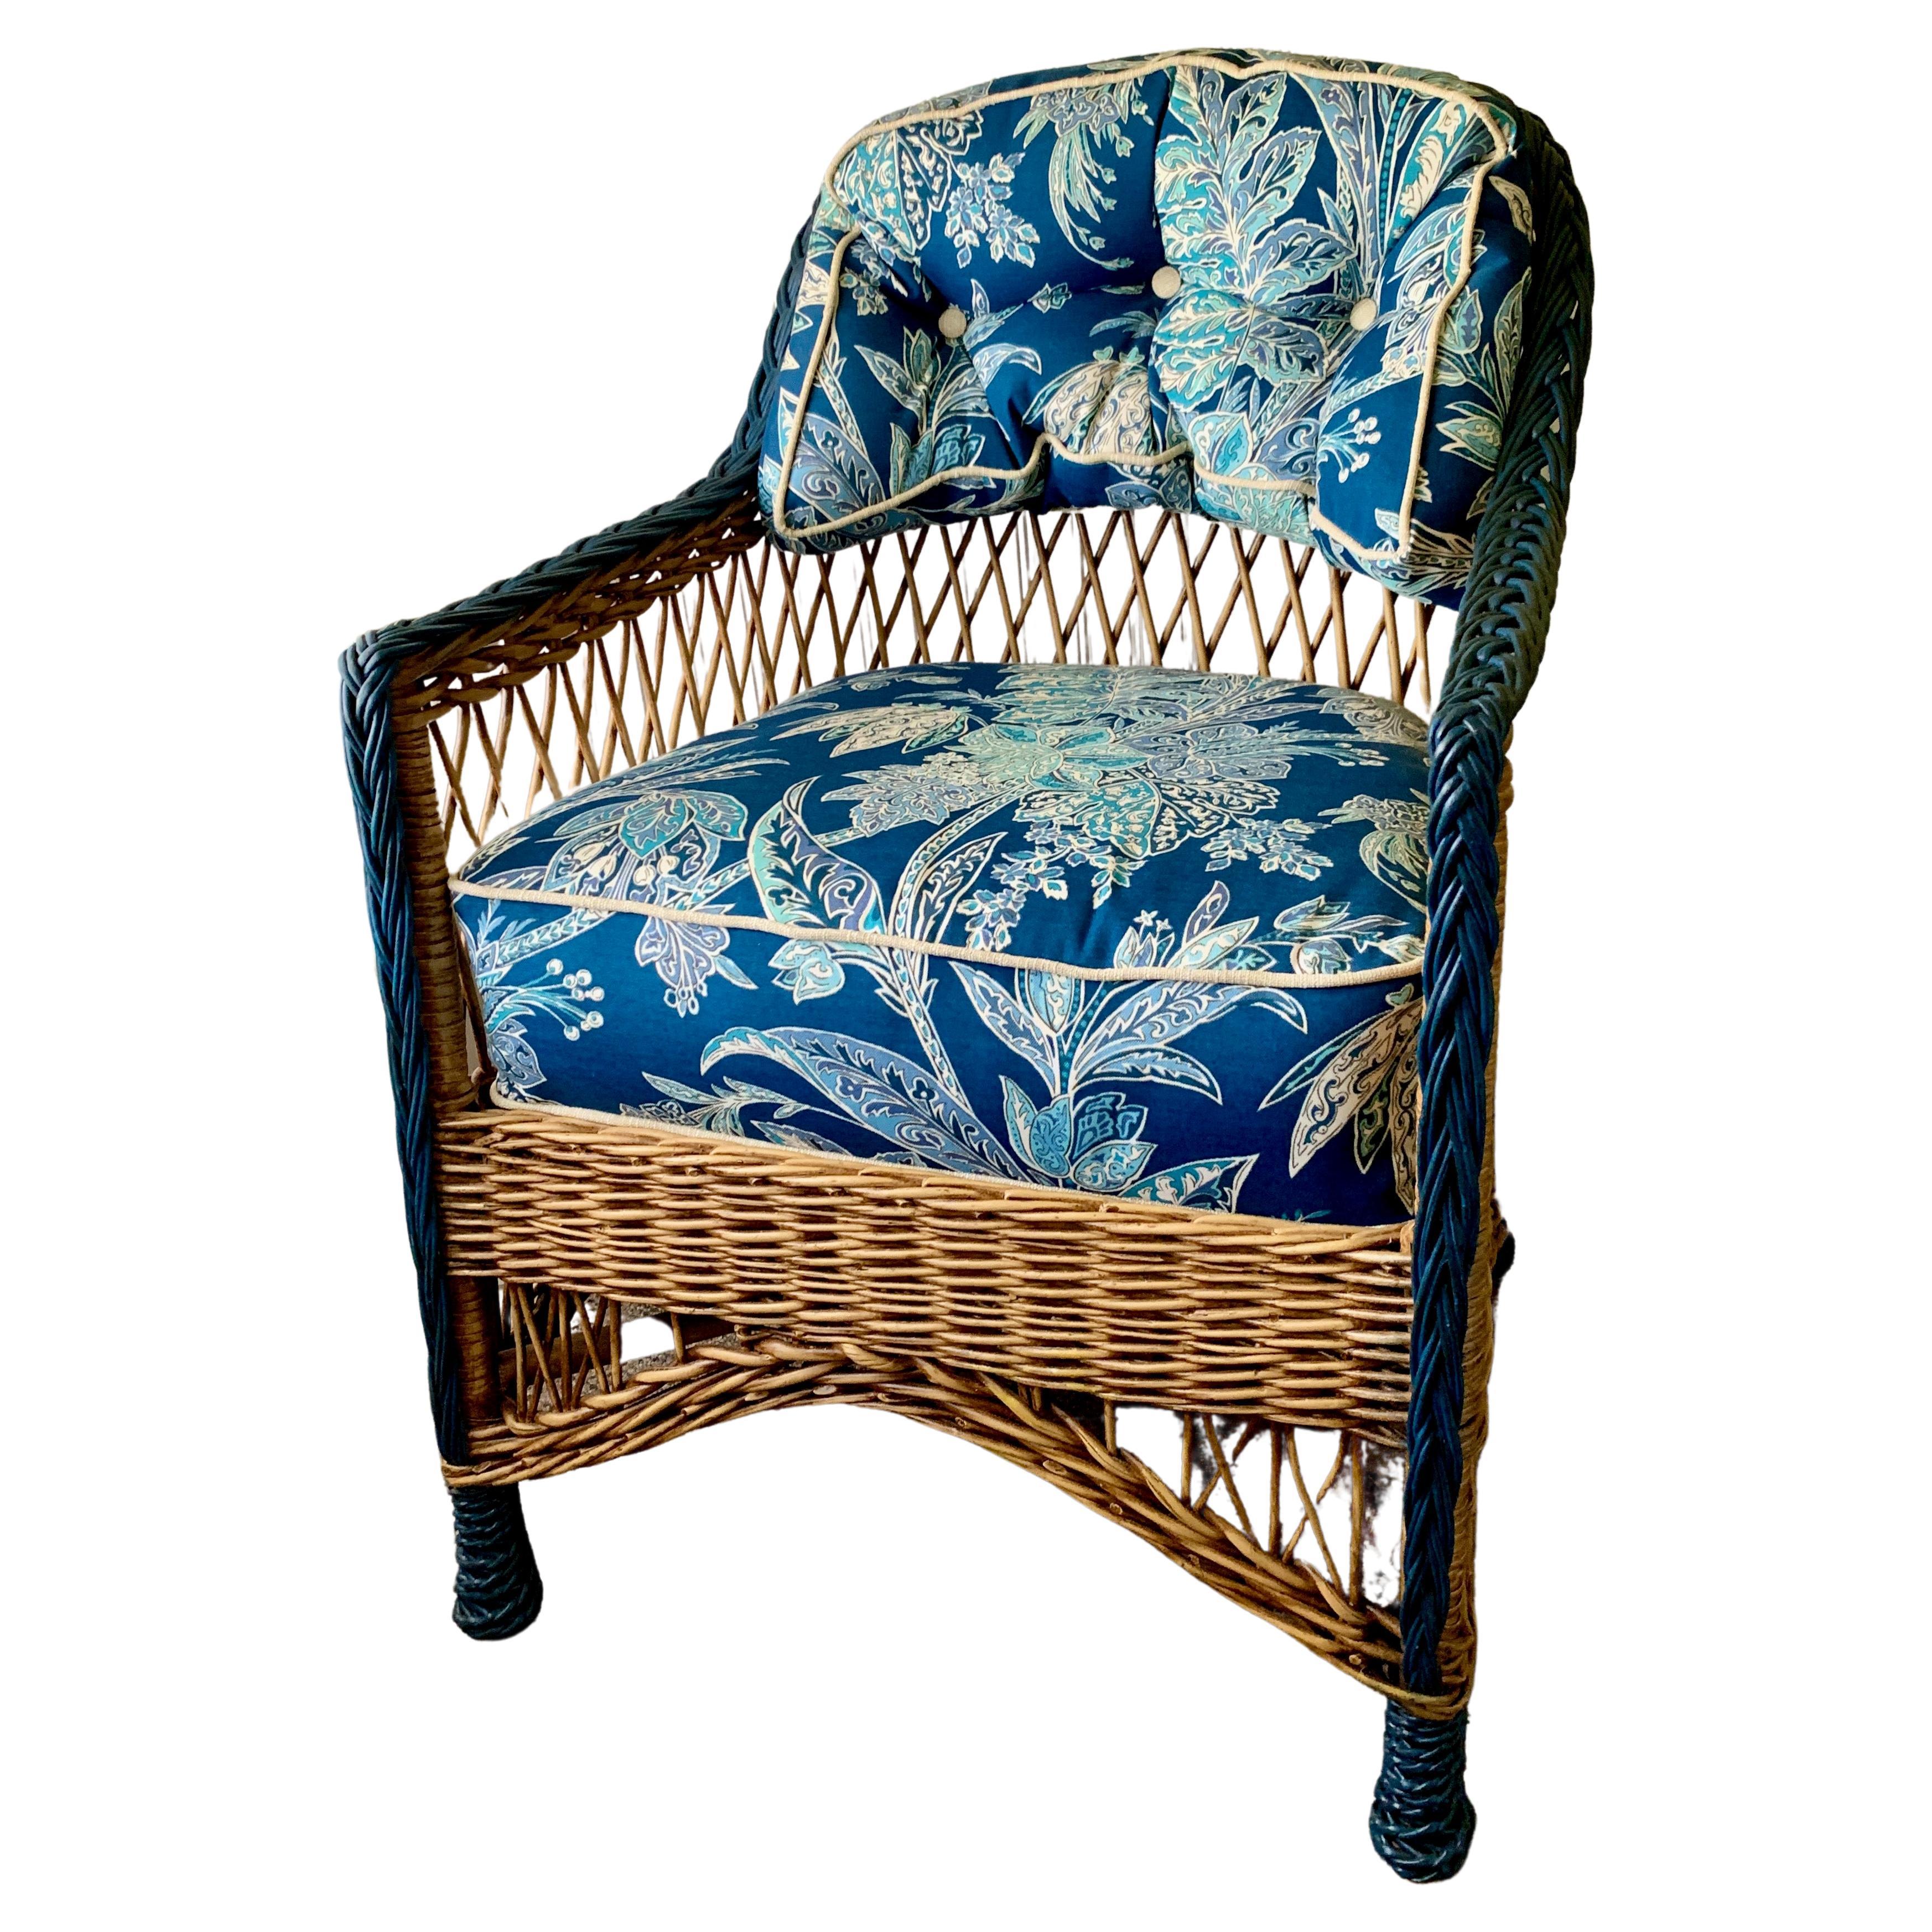 Magnifique fauteuil en osier de style Bar Harbor, de petite taille, en finition naturelle avec des garnitures bleues. Il s'agit d'un fauteuil très confortable et robuste, entièrement tressé, fabriqué très probablement à Gardner Massachusetts au tout